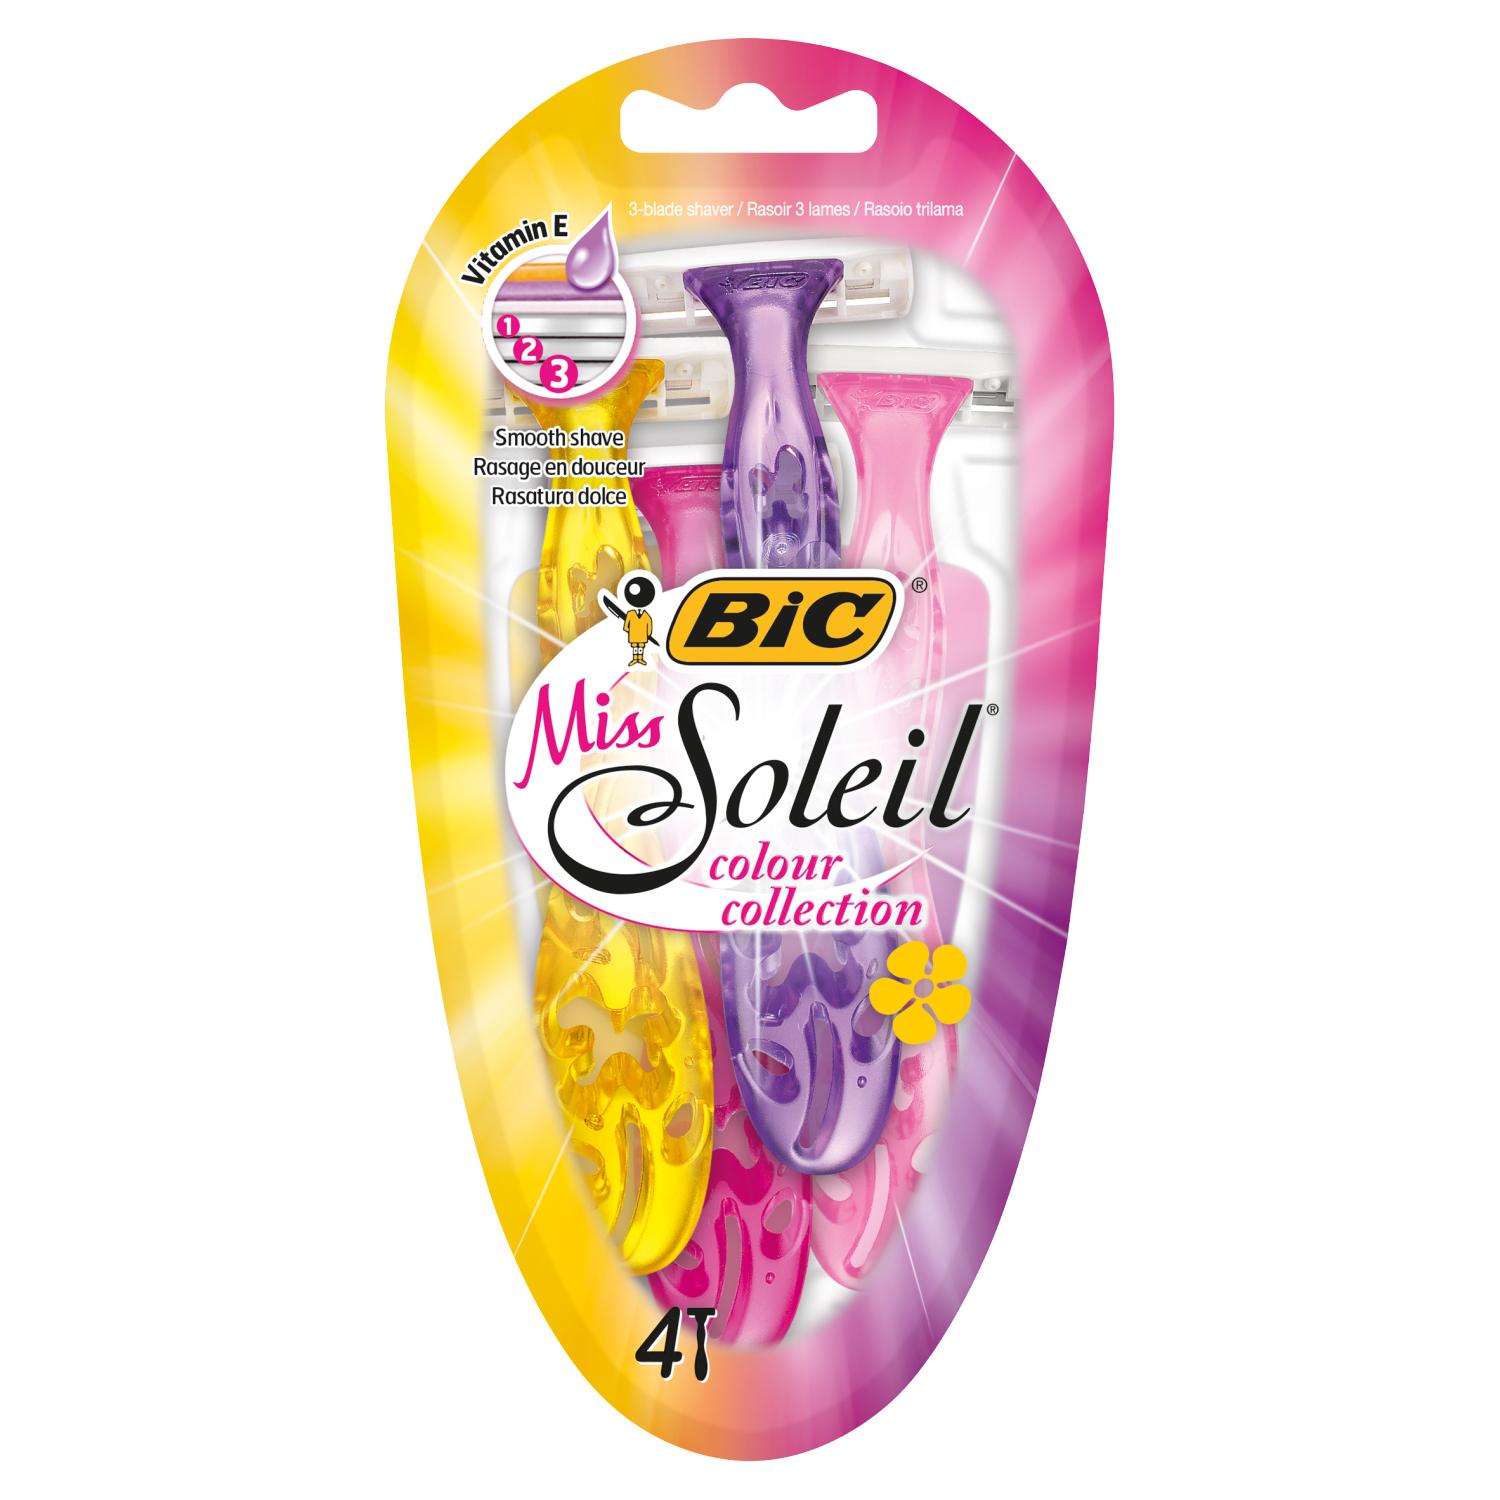 Bic Miss Soleil Colour Collection женская бритва, 4 шт/1 упаковка бритва женская bic miss soleil colour collection 3 лезвия 4